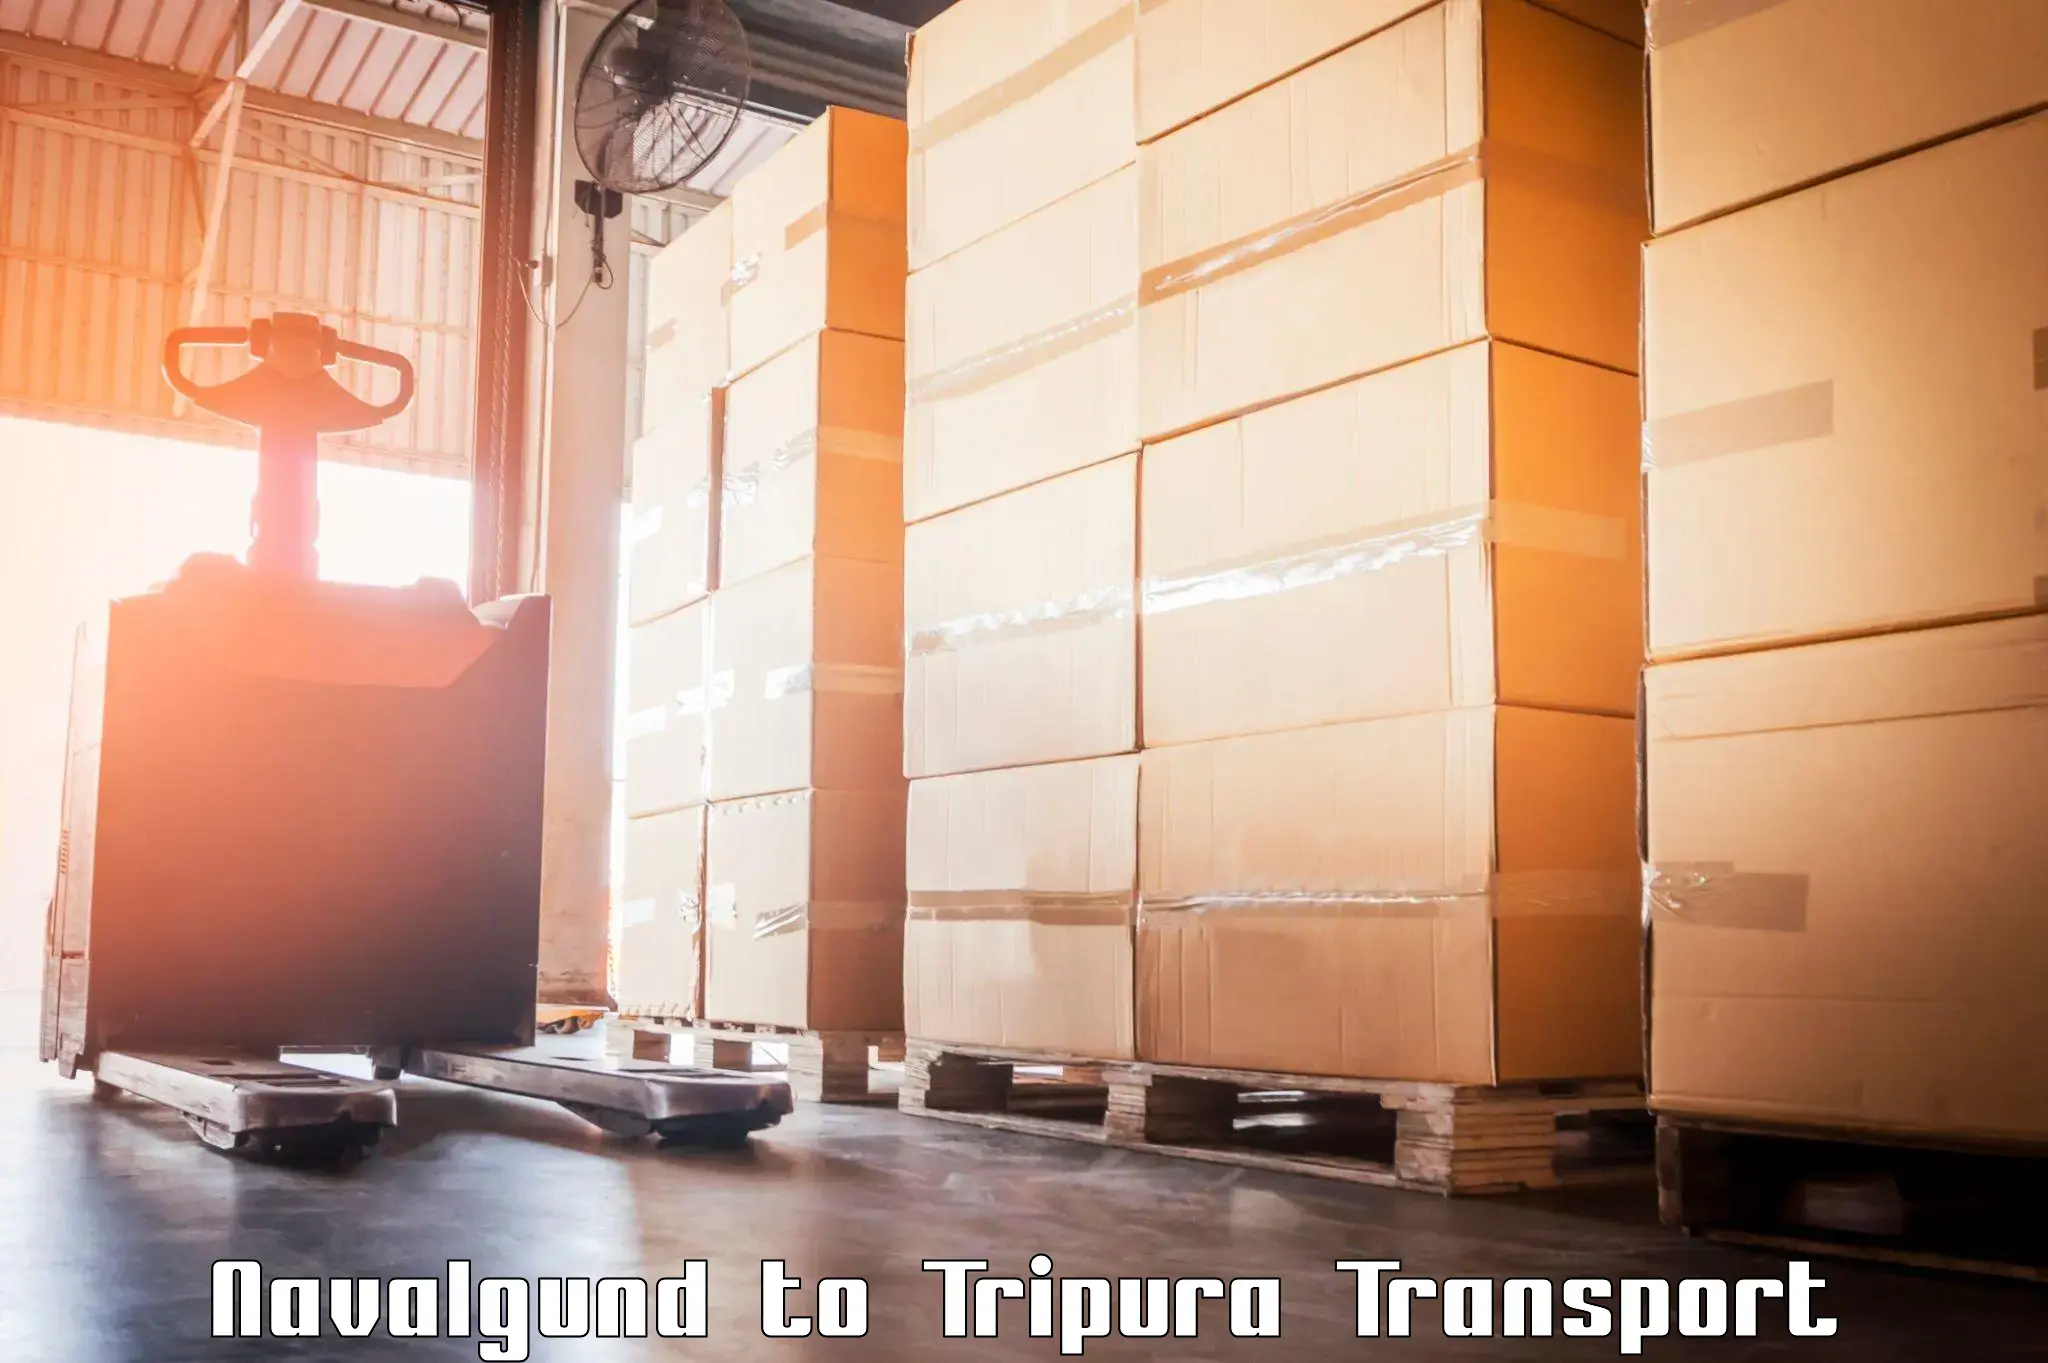 Vehicle parcel service Navalgund to Tripura